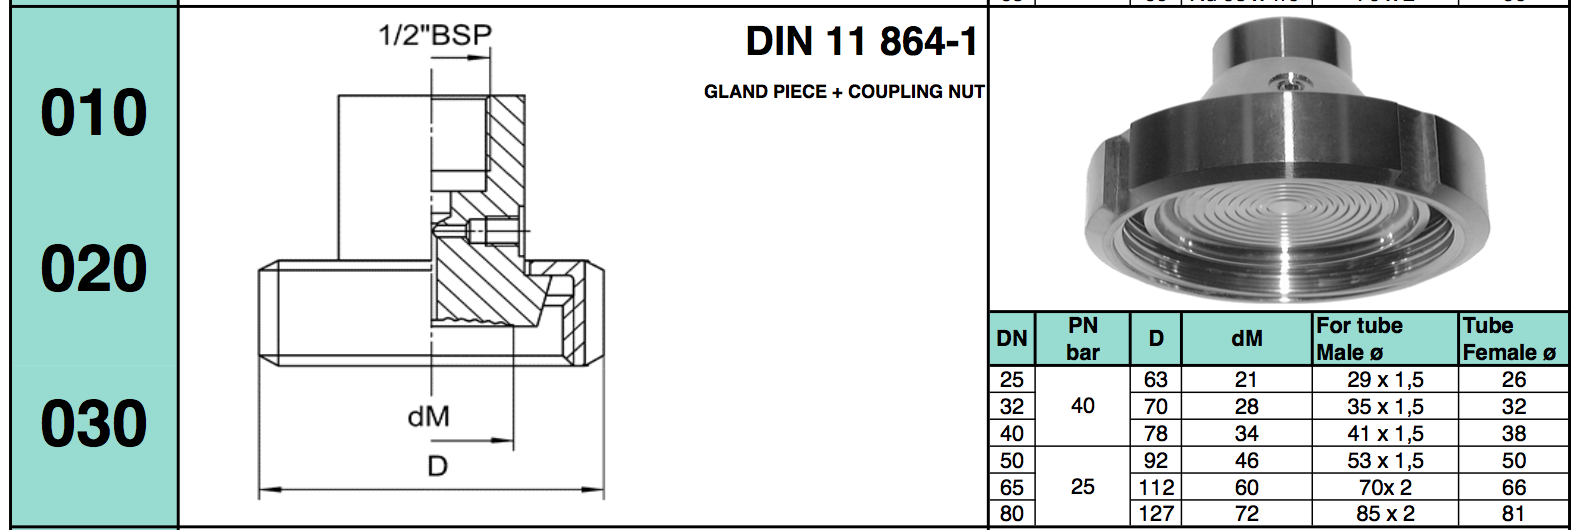 chuẩn kết nối dạng Gland Piece + coupling Nut DIN 11 864-1